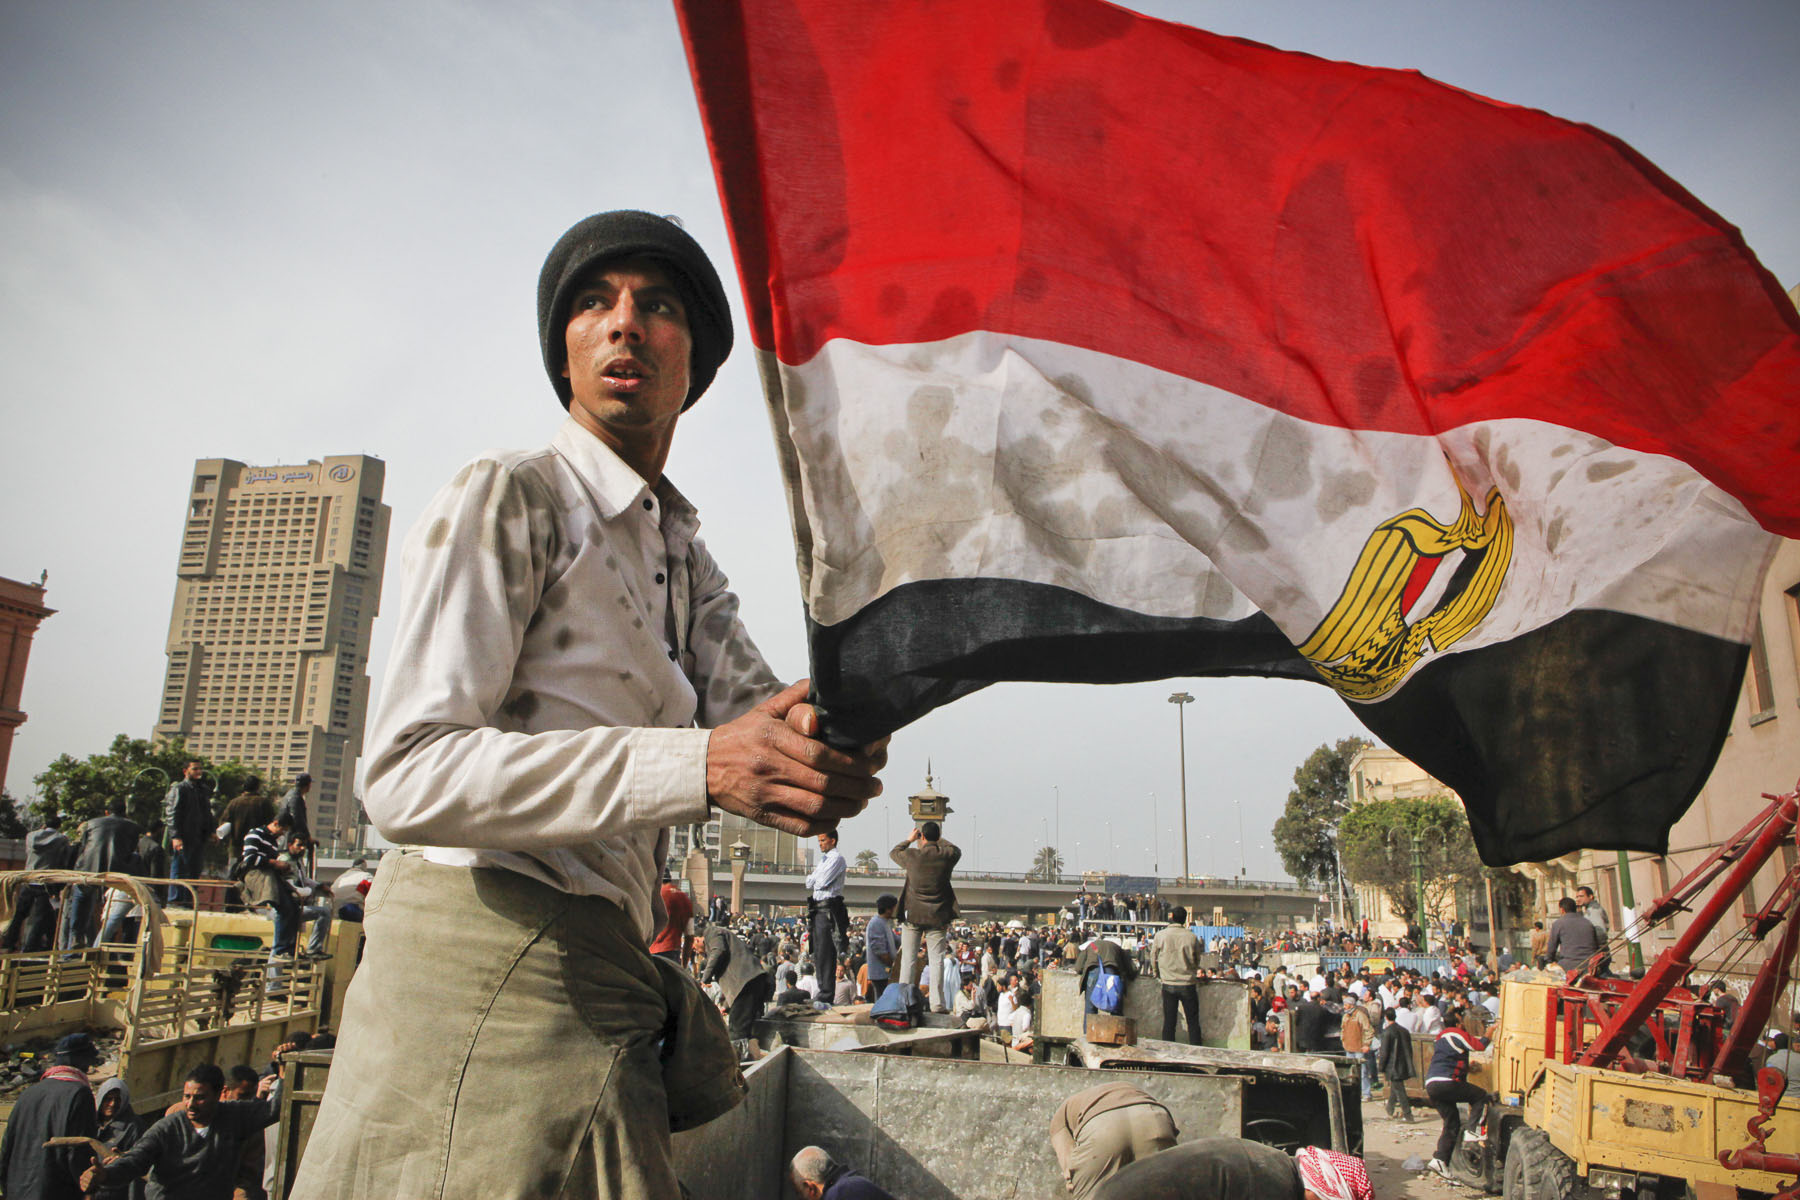 Demonstrators protest against President Mubarak's regime on Tahrir Square on Thursday February 3 2011